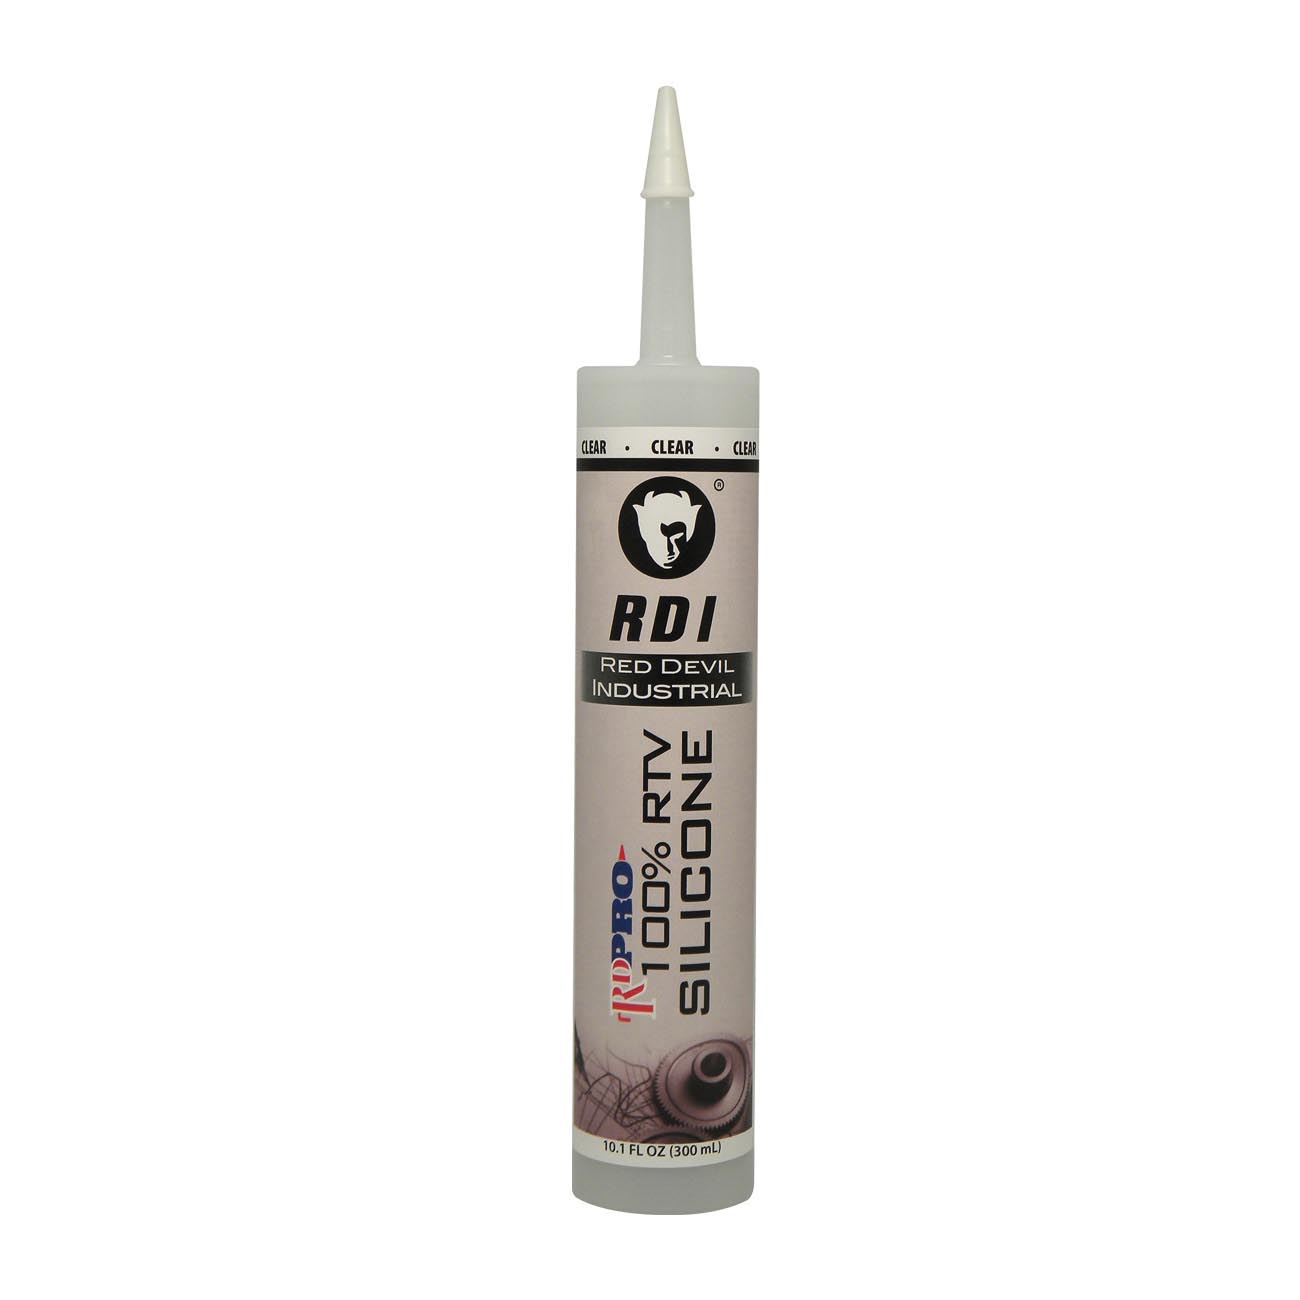 CRC RTV Silicone Sealant - Clear 10.1 Fl oz